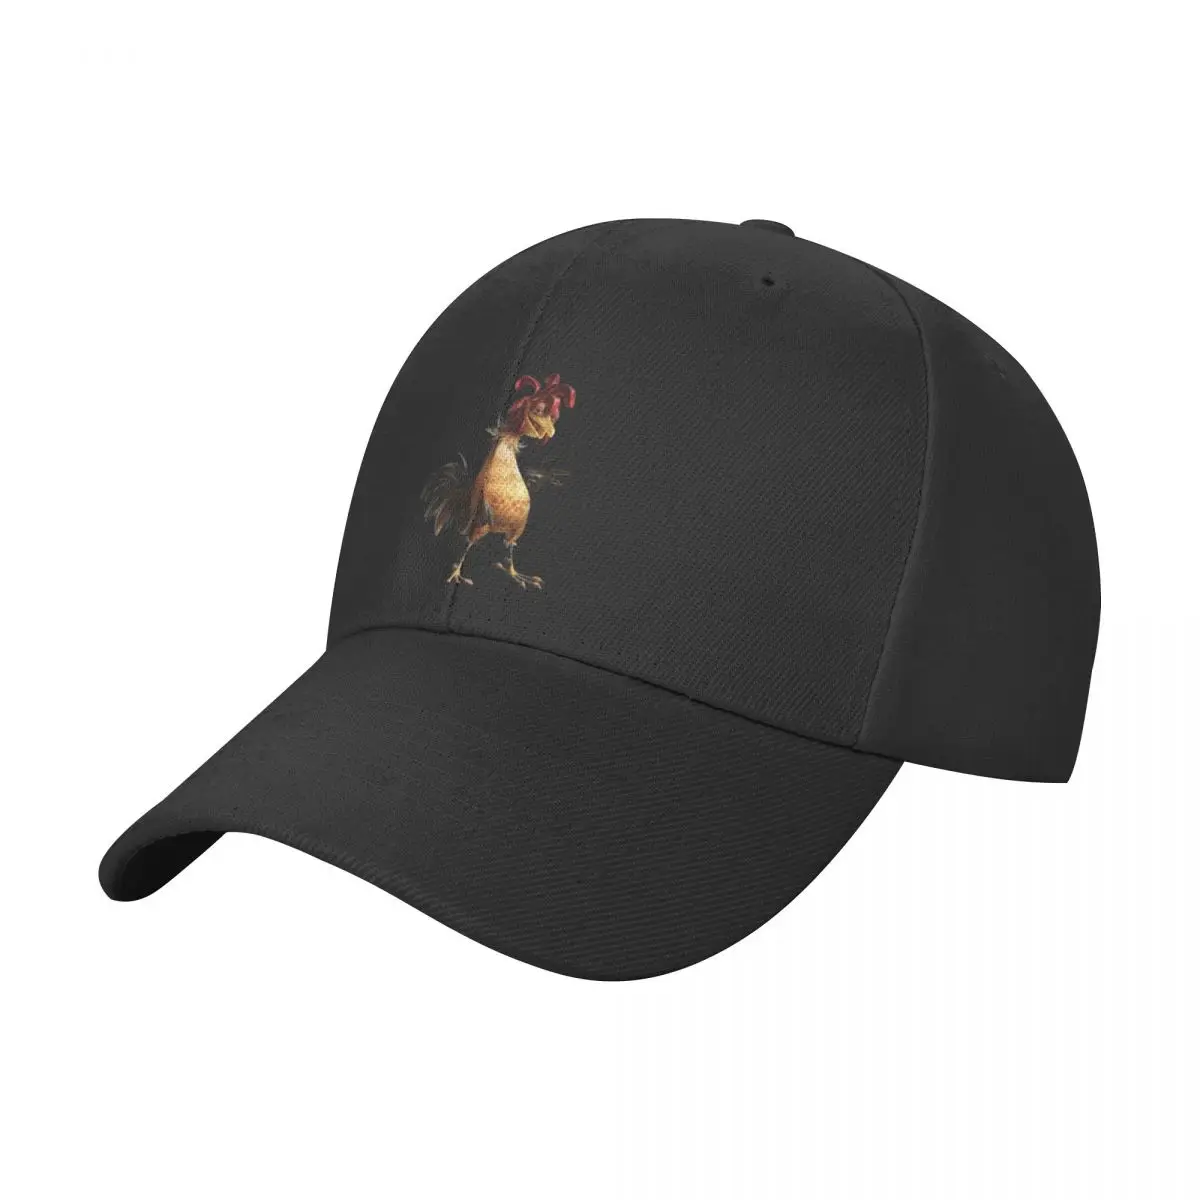 

Chicken Joe Baseball Cap hiking hat New In Hat Trucker Hat Streetwear Fashion Beach Women's Golf Wear Men's